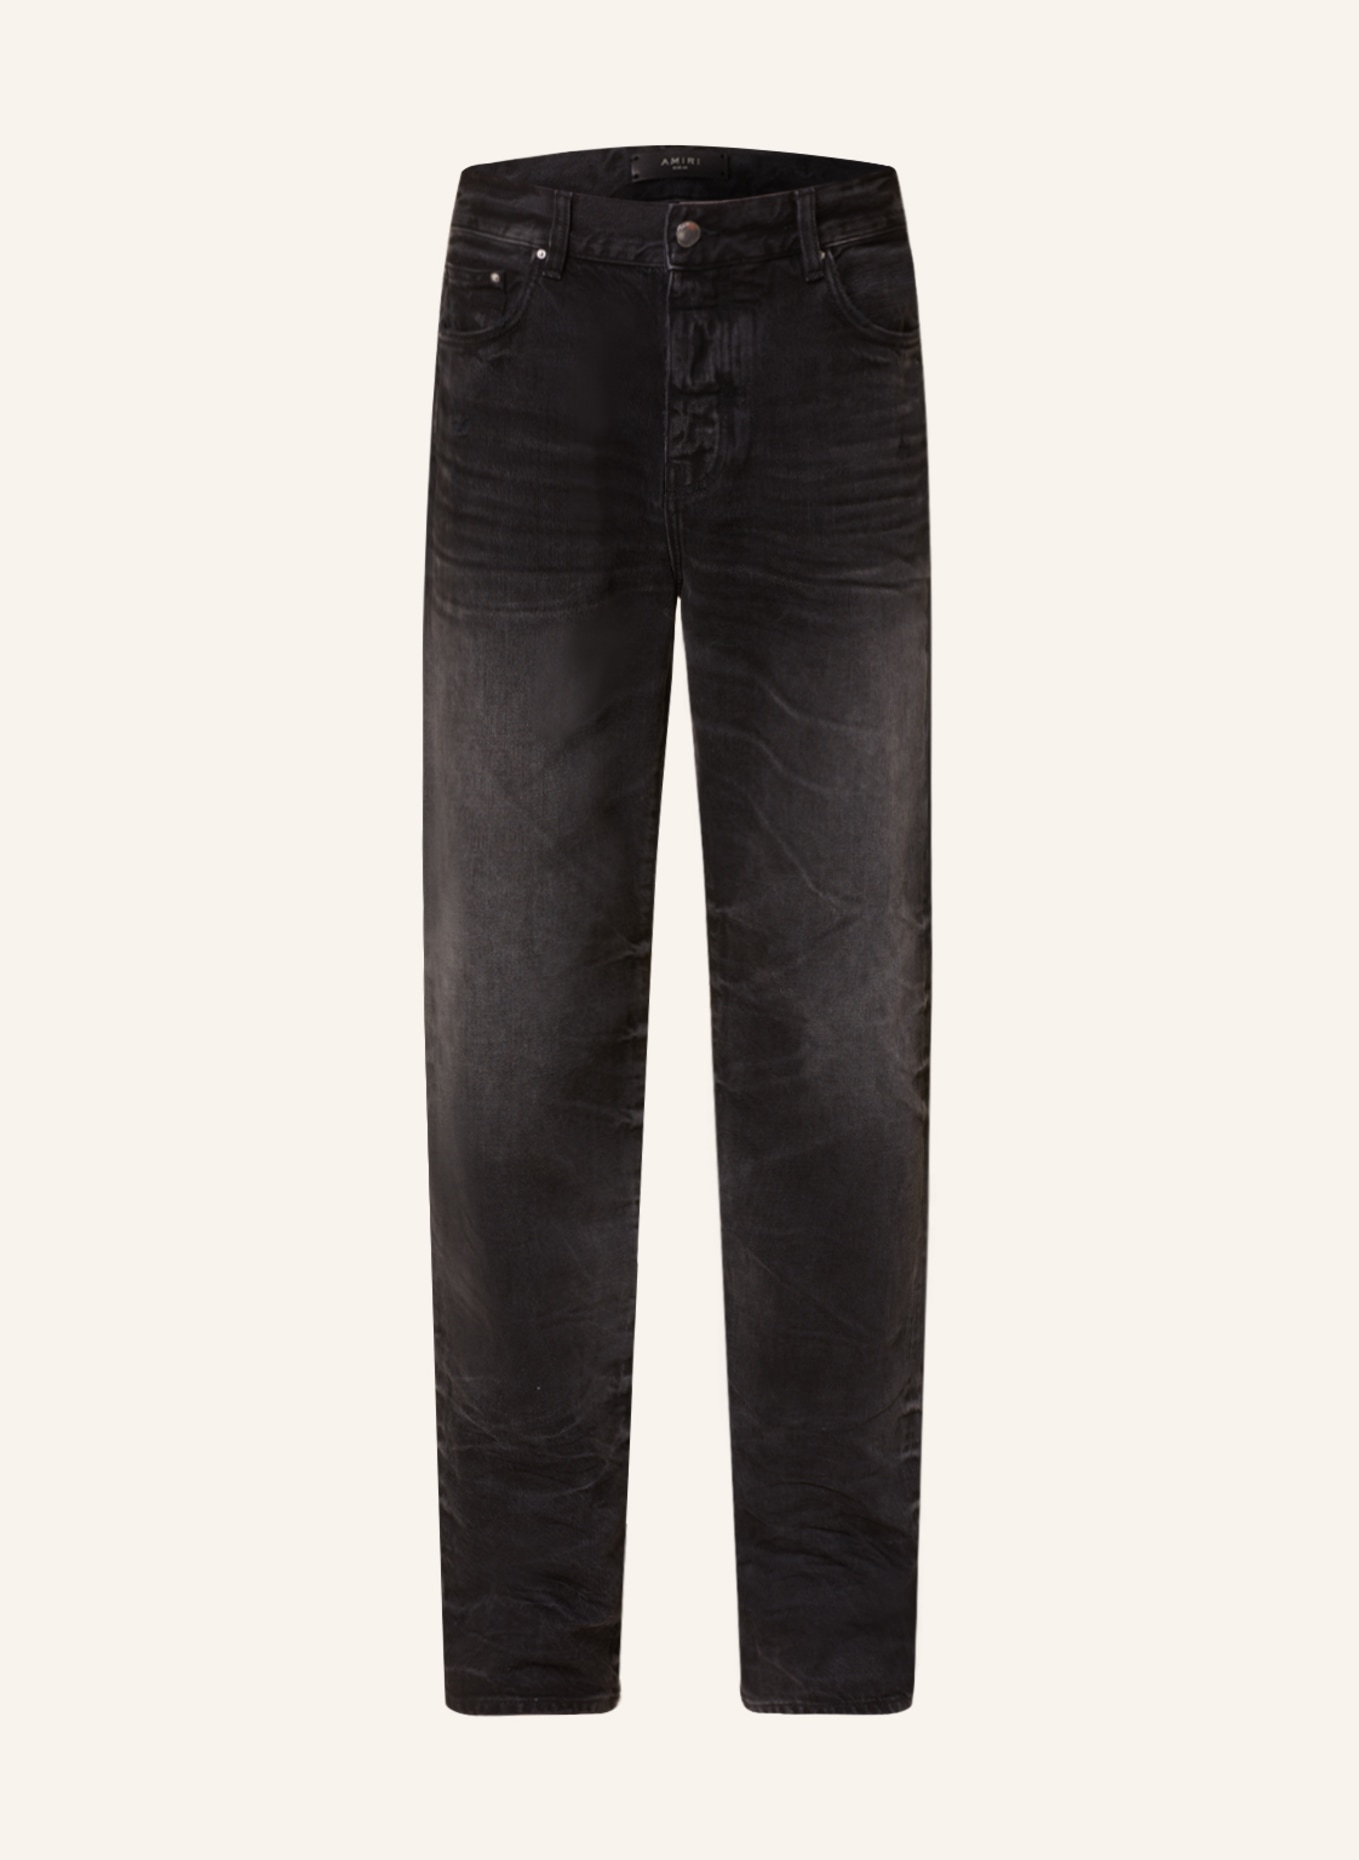 AMIRI Jeans Straight Fit, Farbe: 518 FADED BLACK (Bild 1)